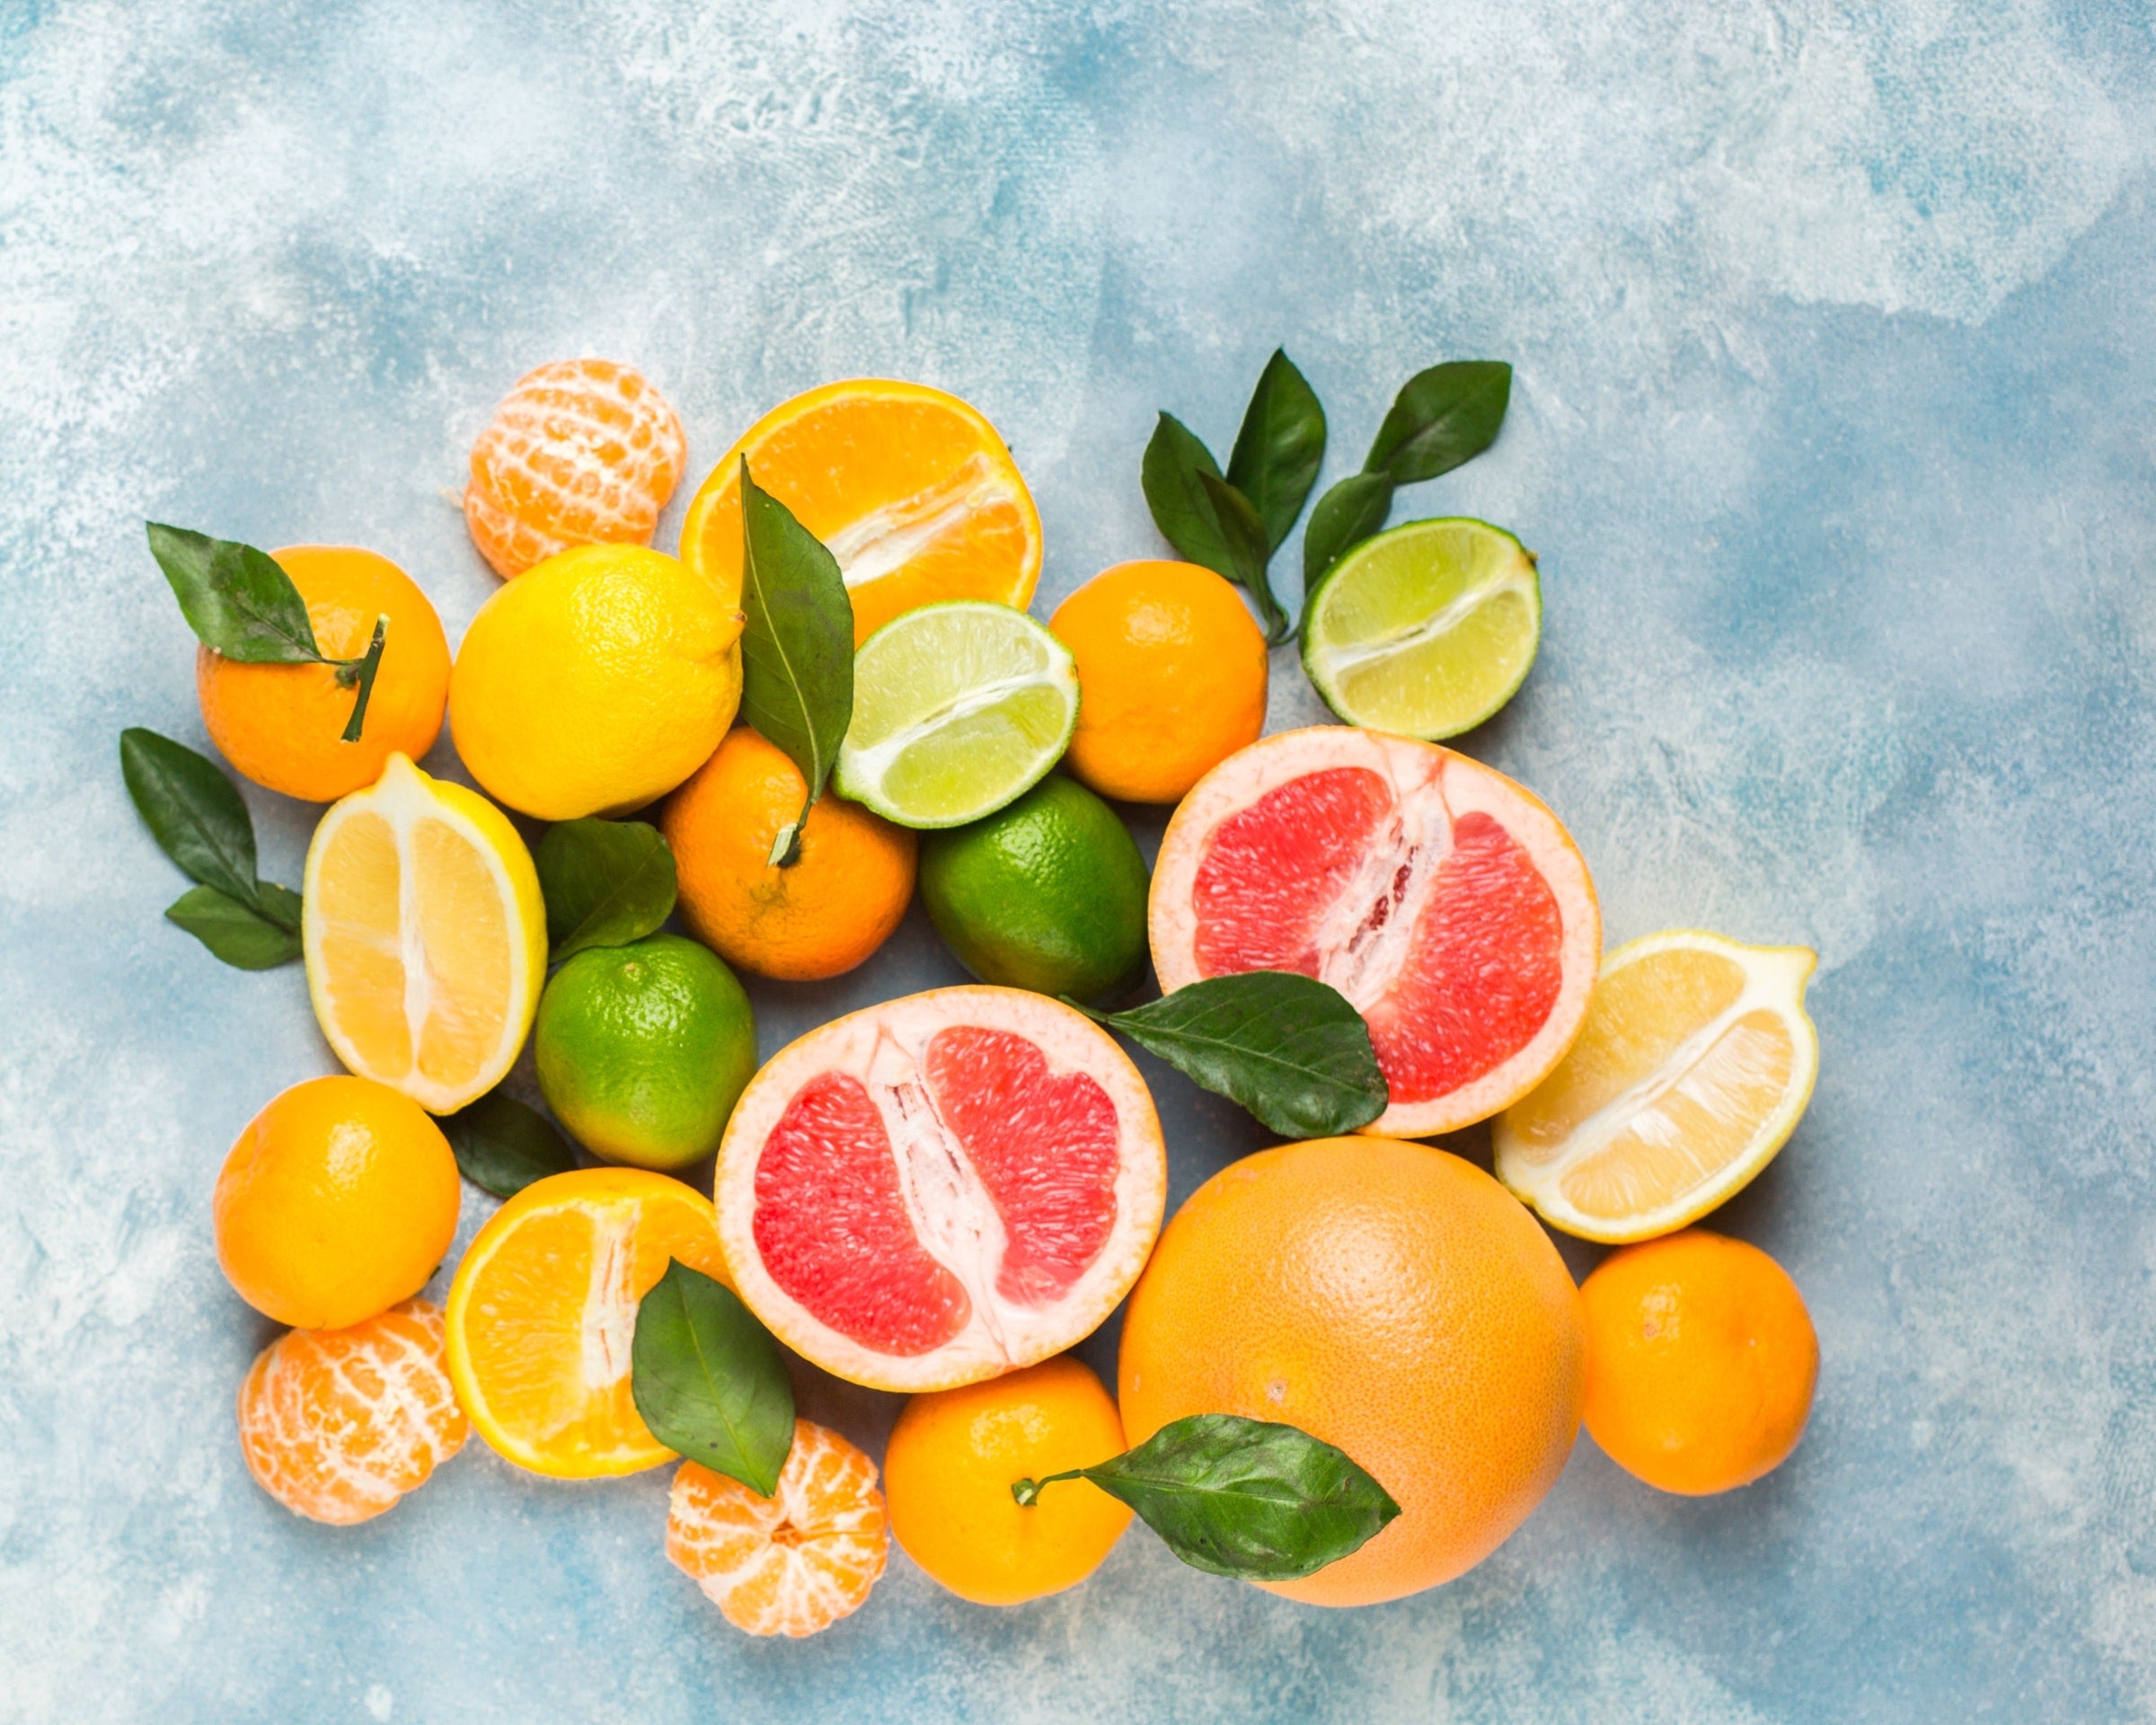 登山健行旅行最適合攜帶上高山的水果種類 citrus lemon orange tangerine fruit